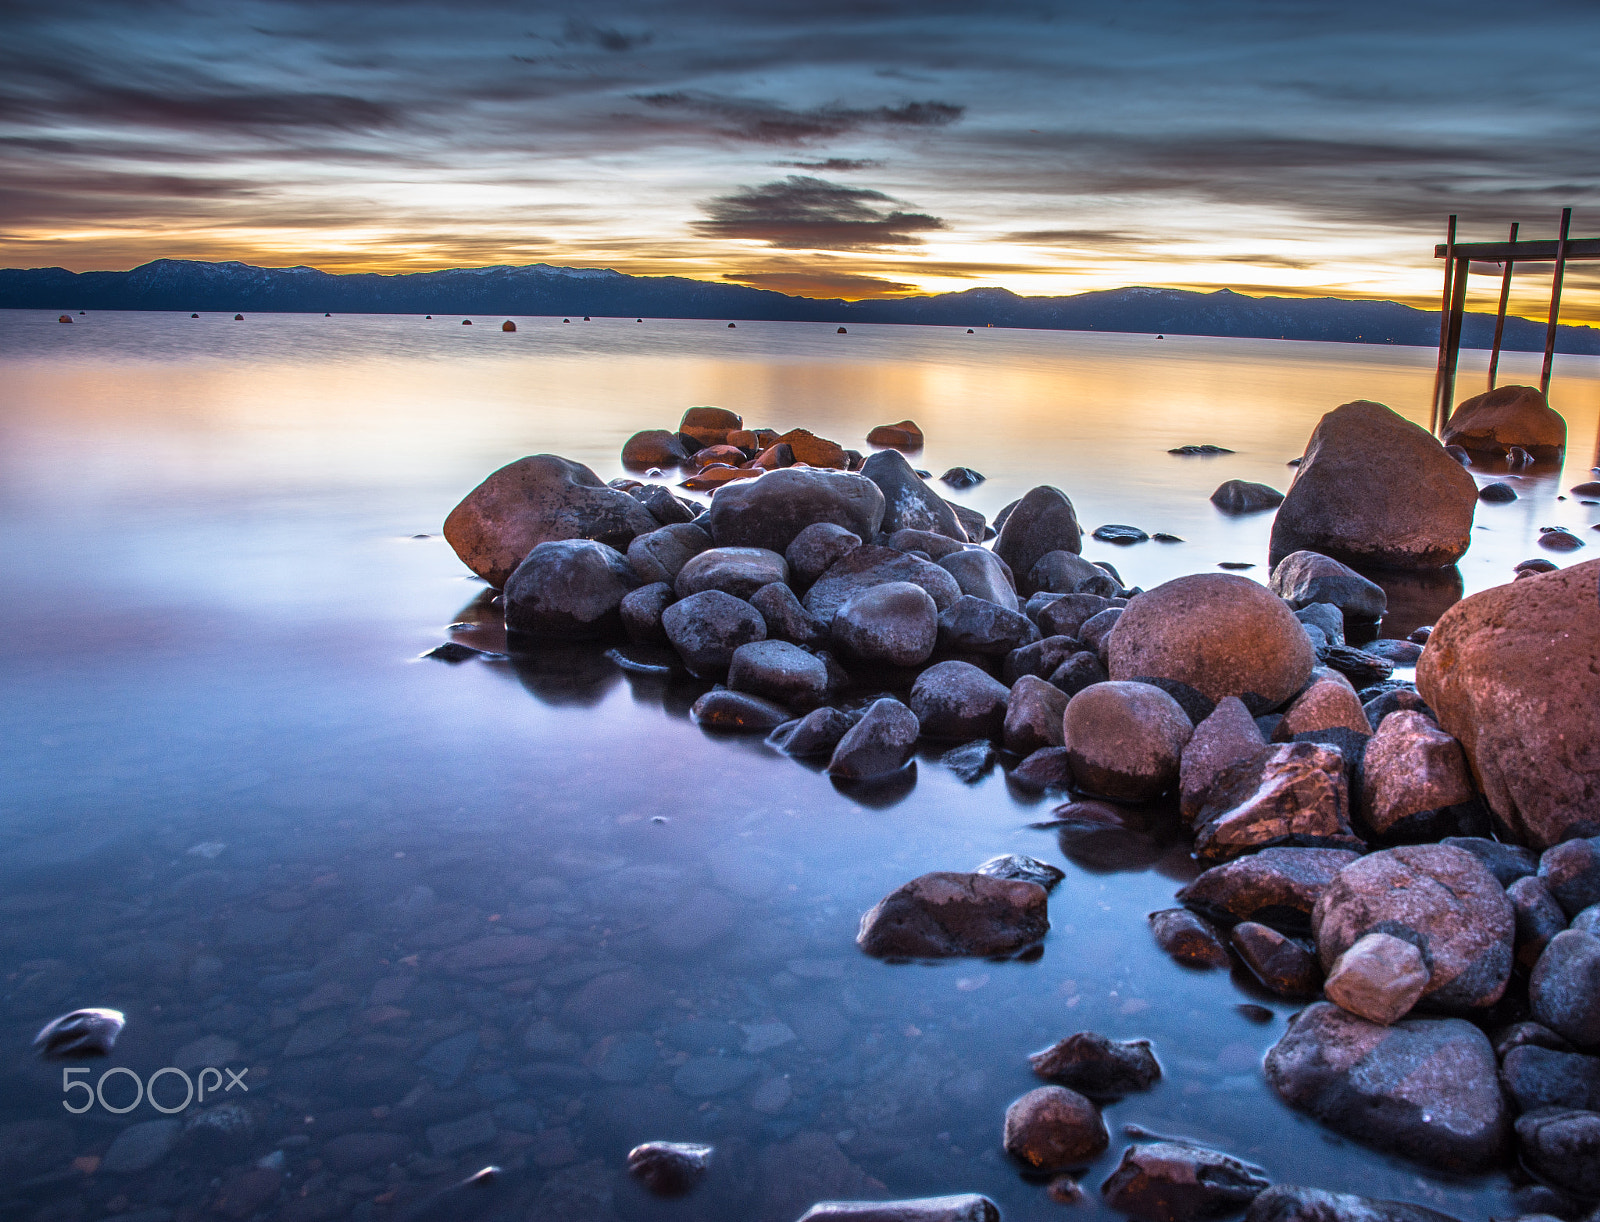 Nikon D7200 + AF-S VR DX 16-80mm f/2.8-4.0E ED sample photo. Lake tahoe sunrise photography